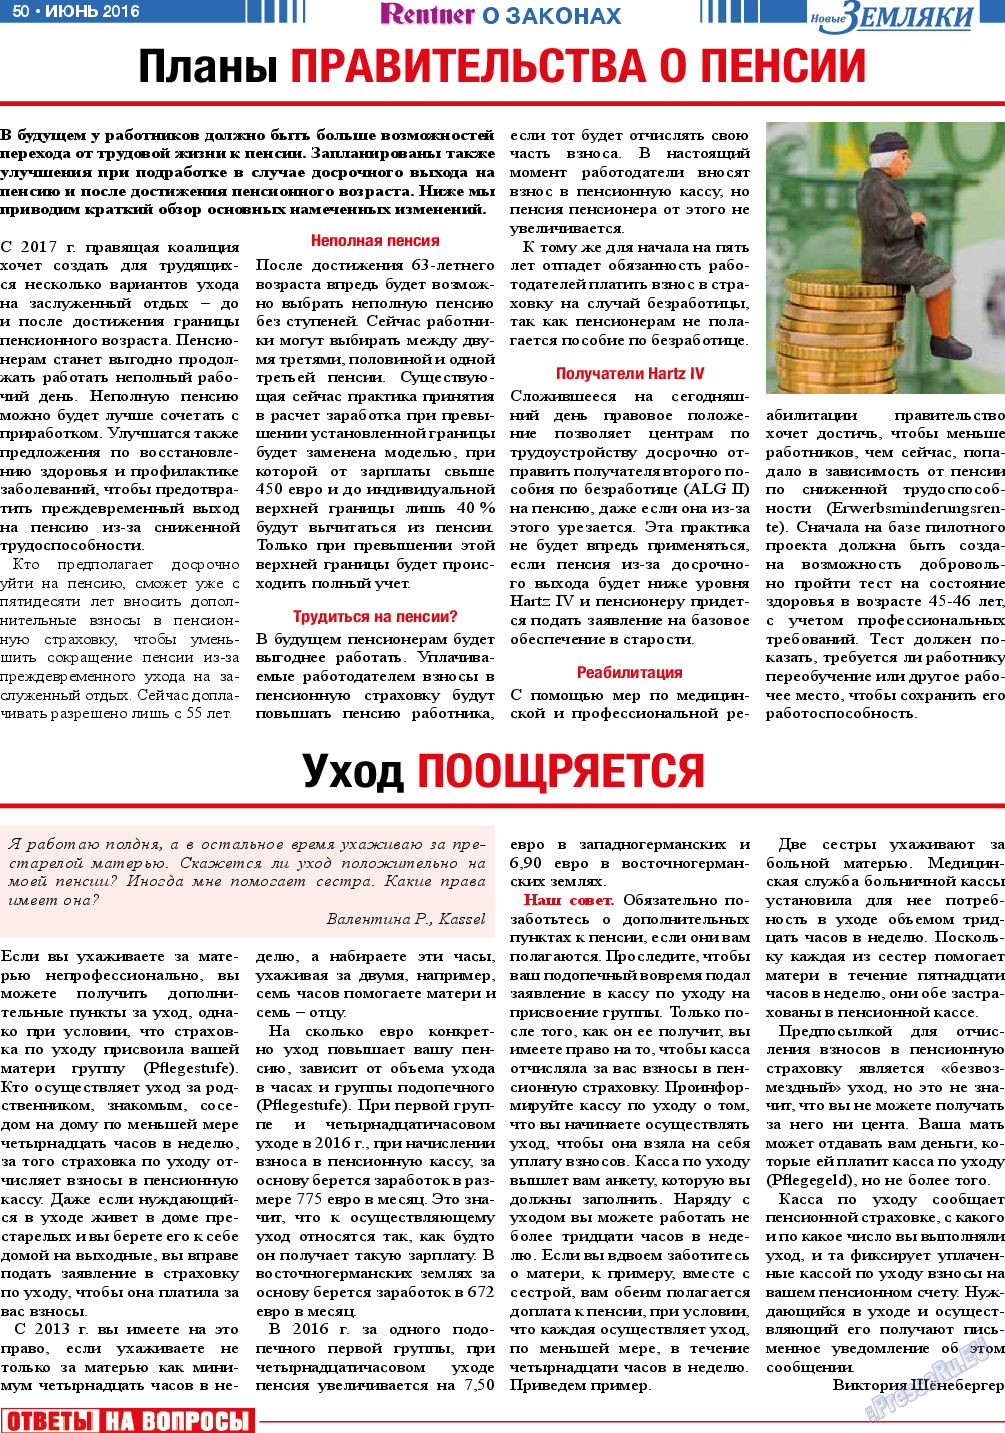 Новые Земляки, газета. 2016 №6 стр.50